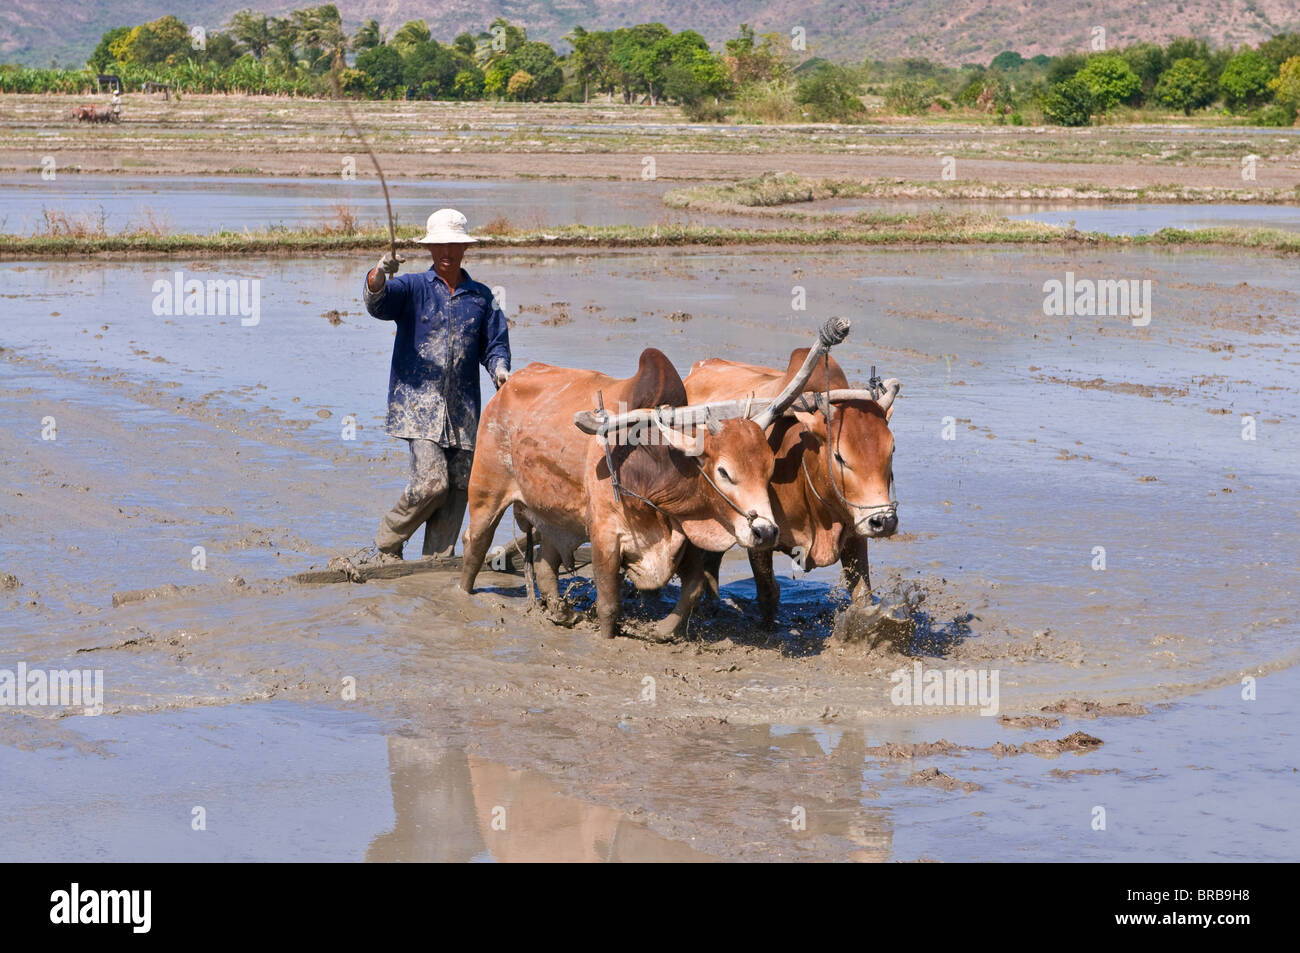 Homme labourant avec les buffles d'eau grâce à une rizière, Vietnam, Indochine, Asie du Sud-Est, l'Asie Banque D'Images